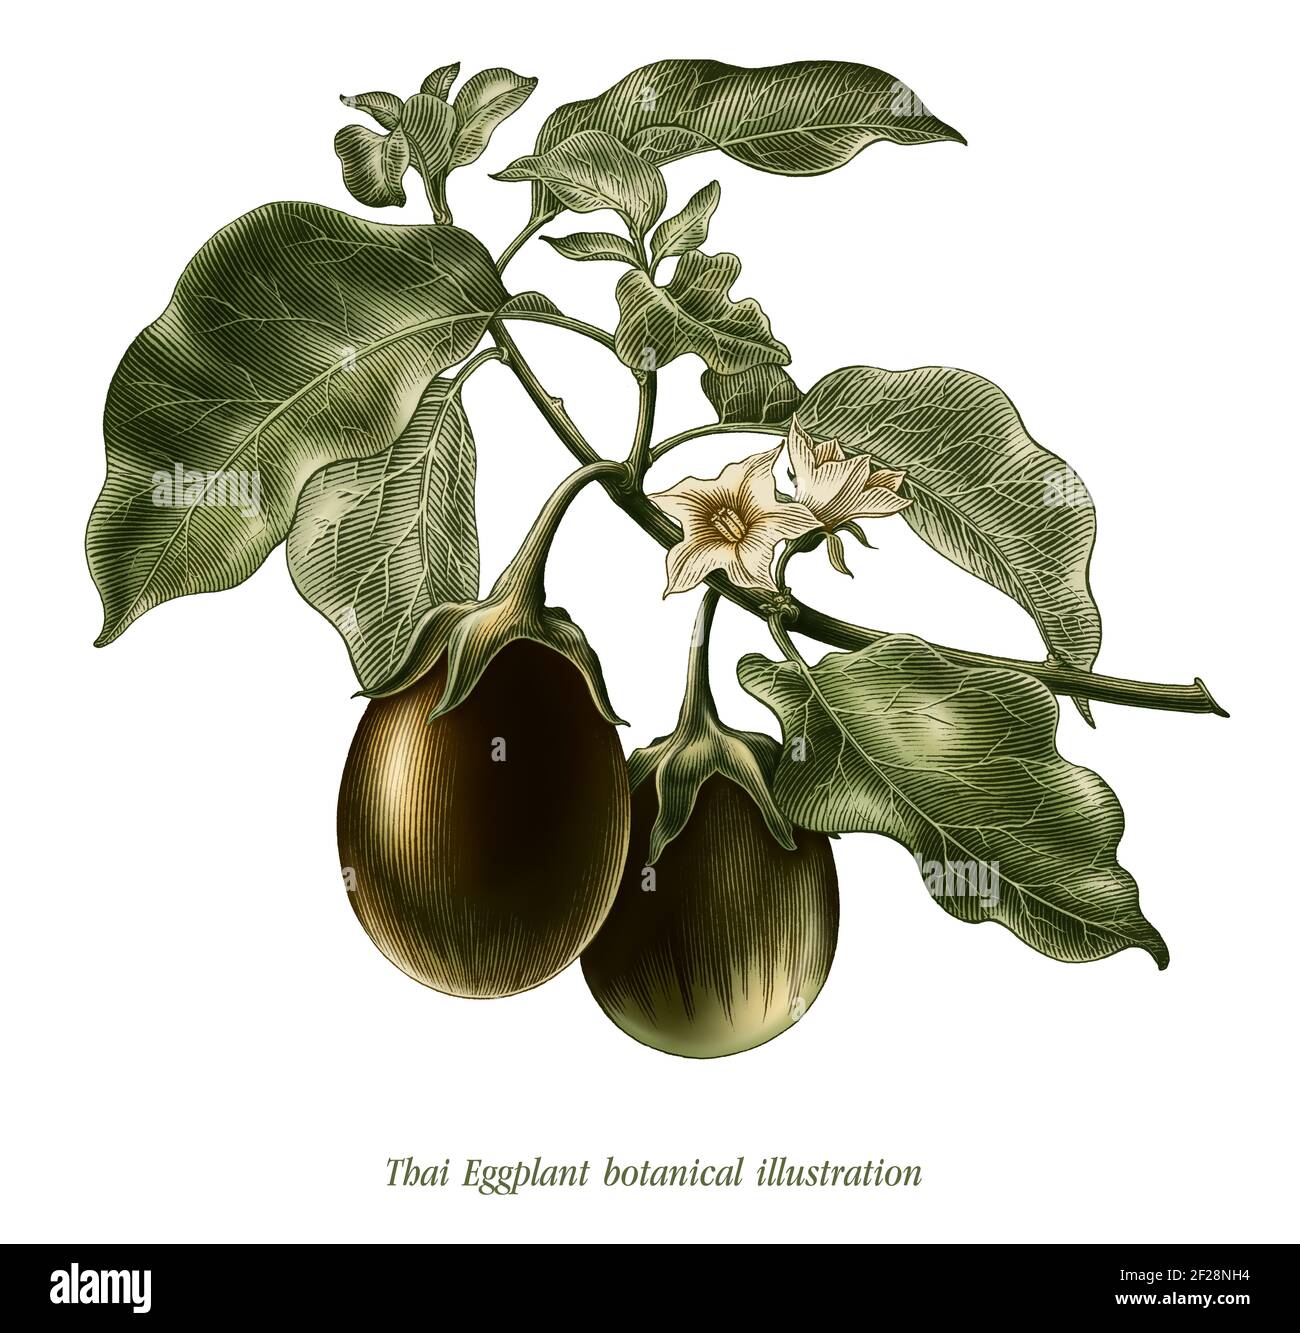 Thai Eggplant botanical illustration vintage style clip art isolated on white background Stock Photo